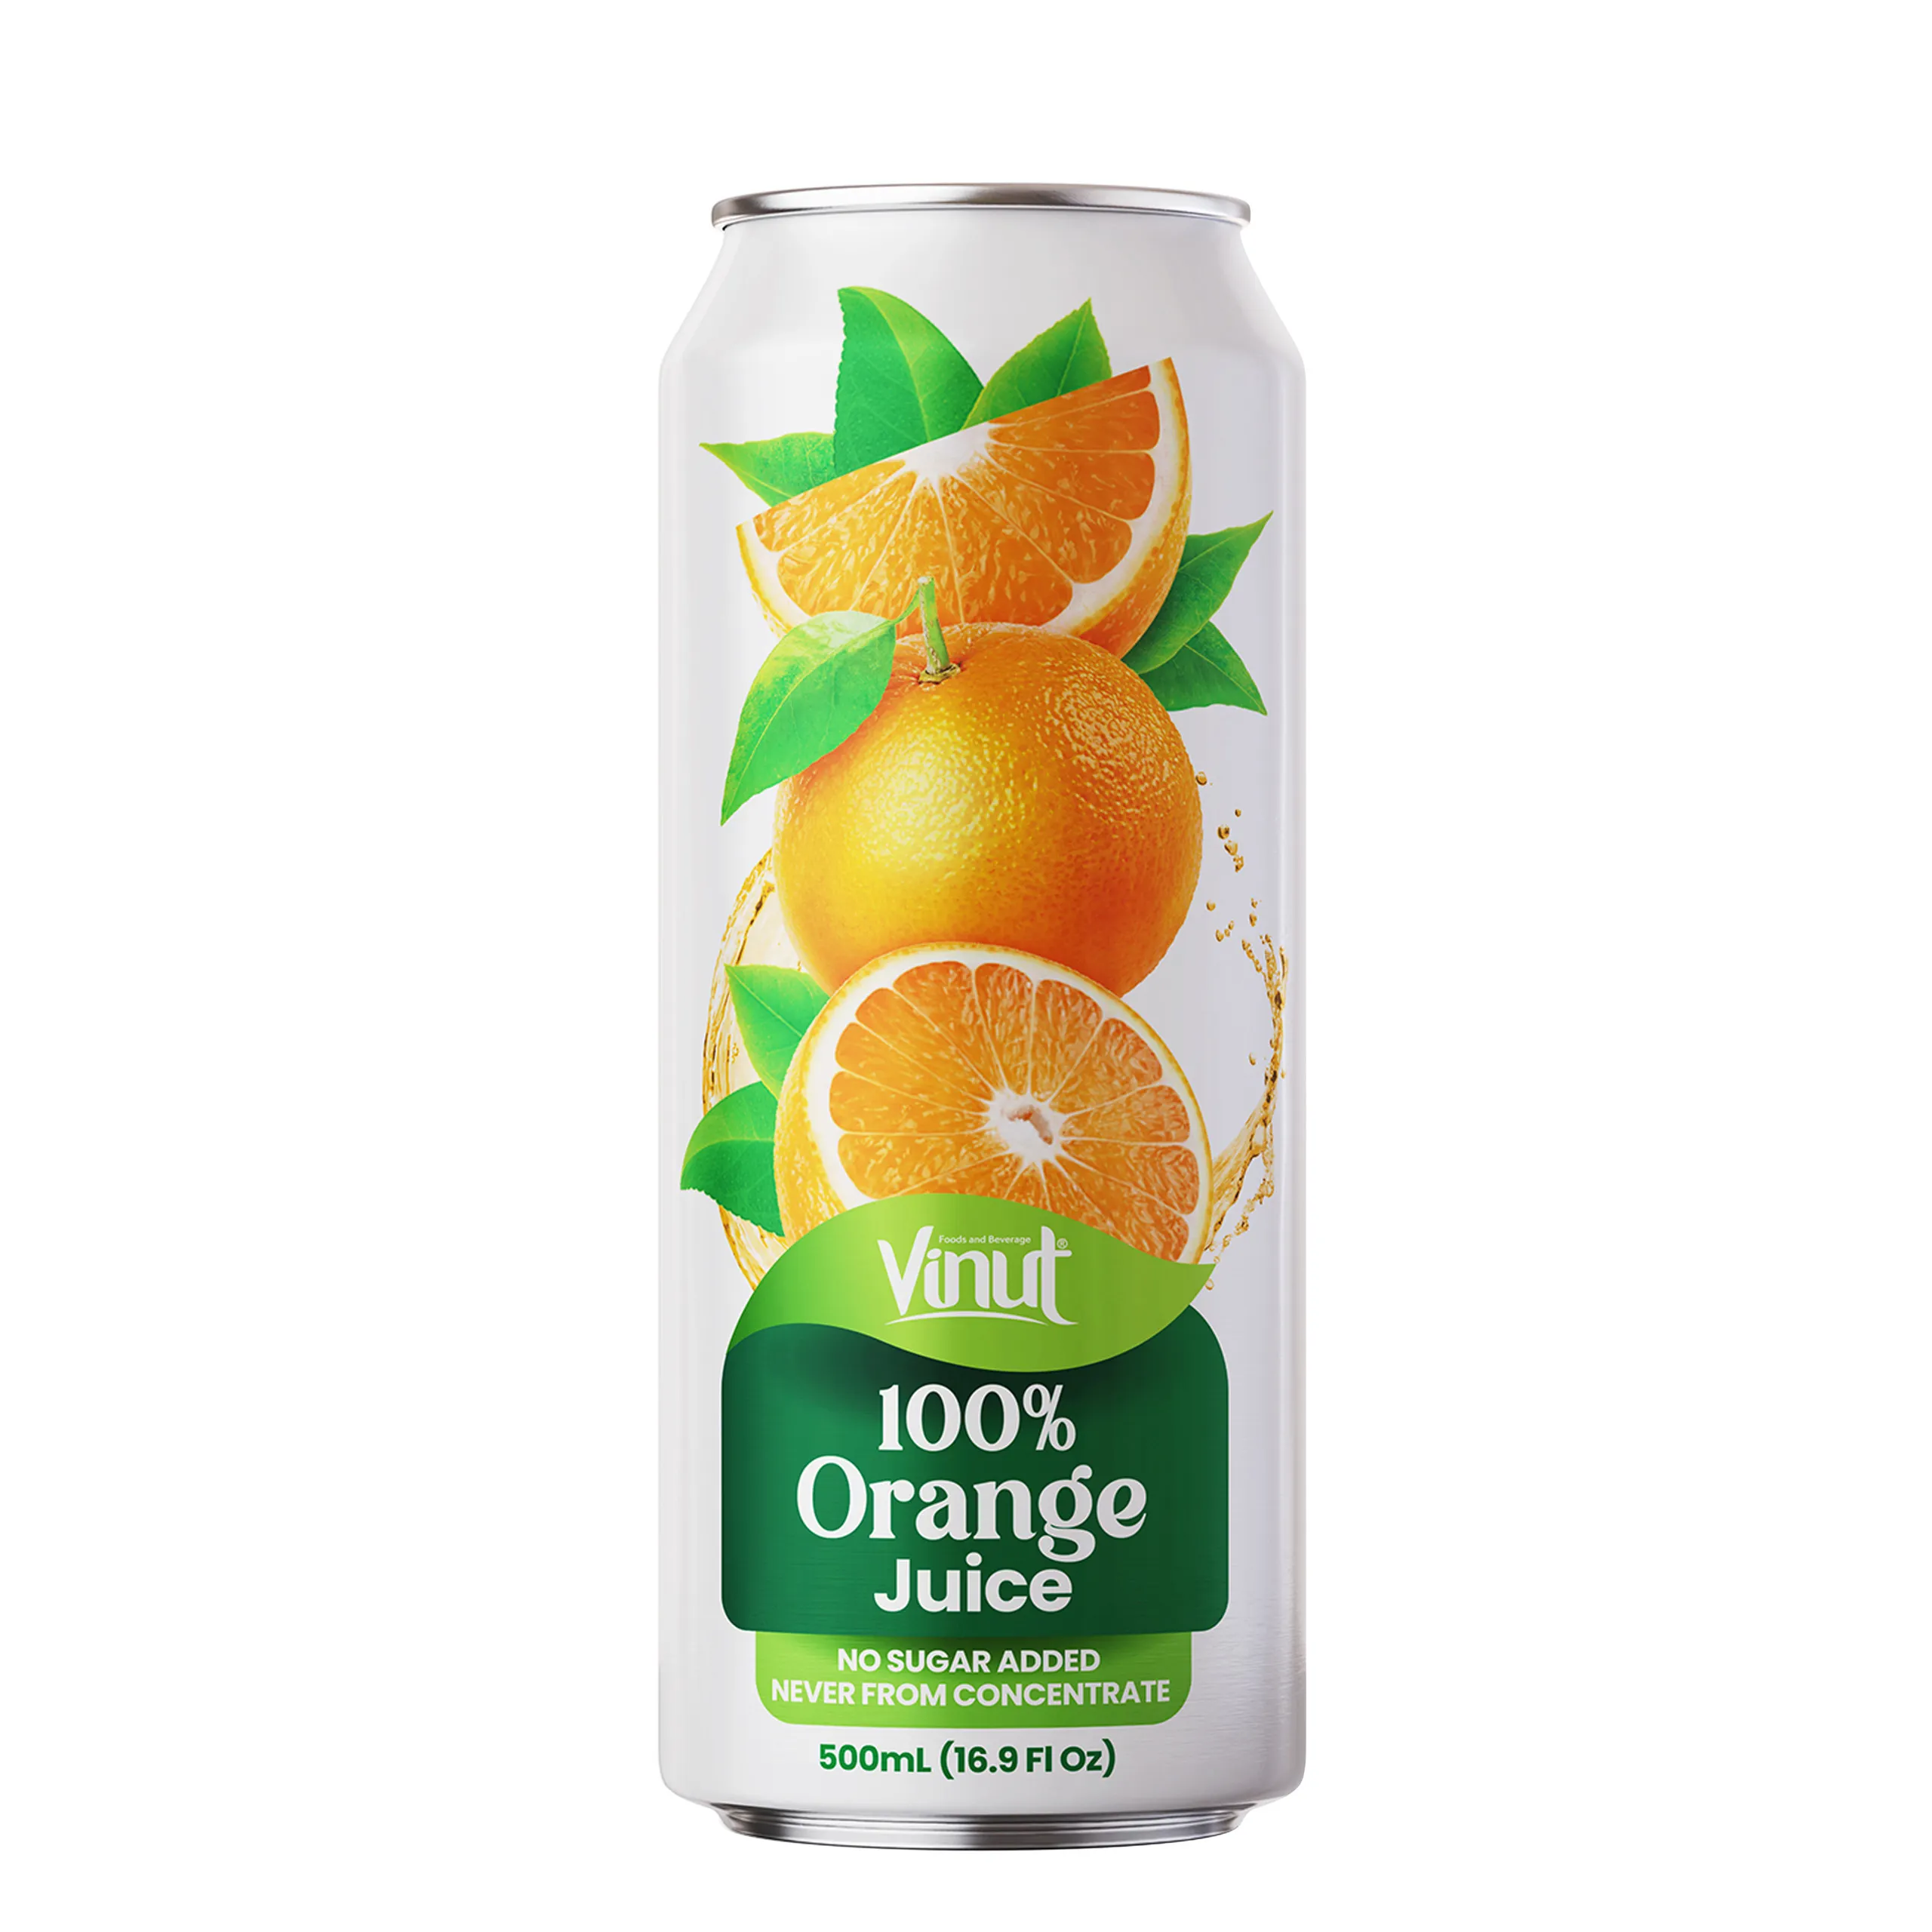 500ml portakal meyve suyu VINUT tropikal sıcak satış ücretsiz örnek, özel etiket, toptan tedarikçiler (OEM, ODM)